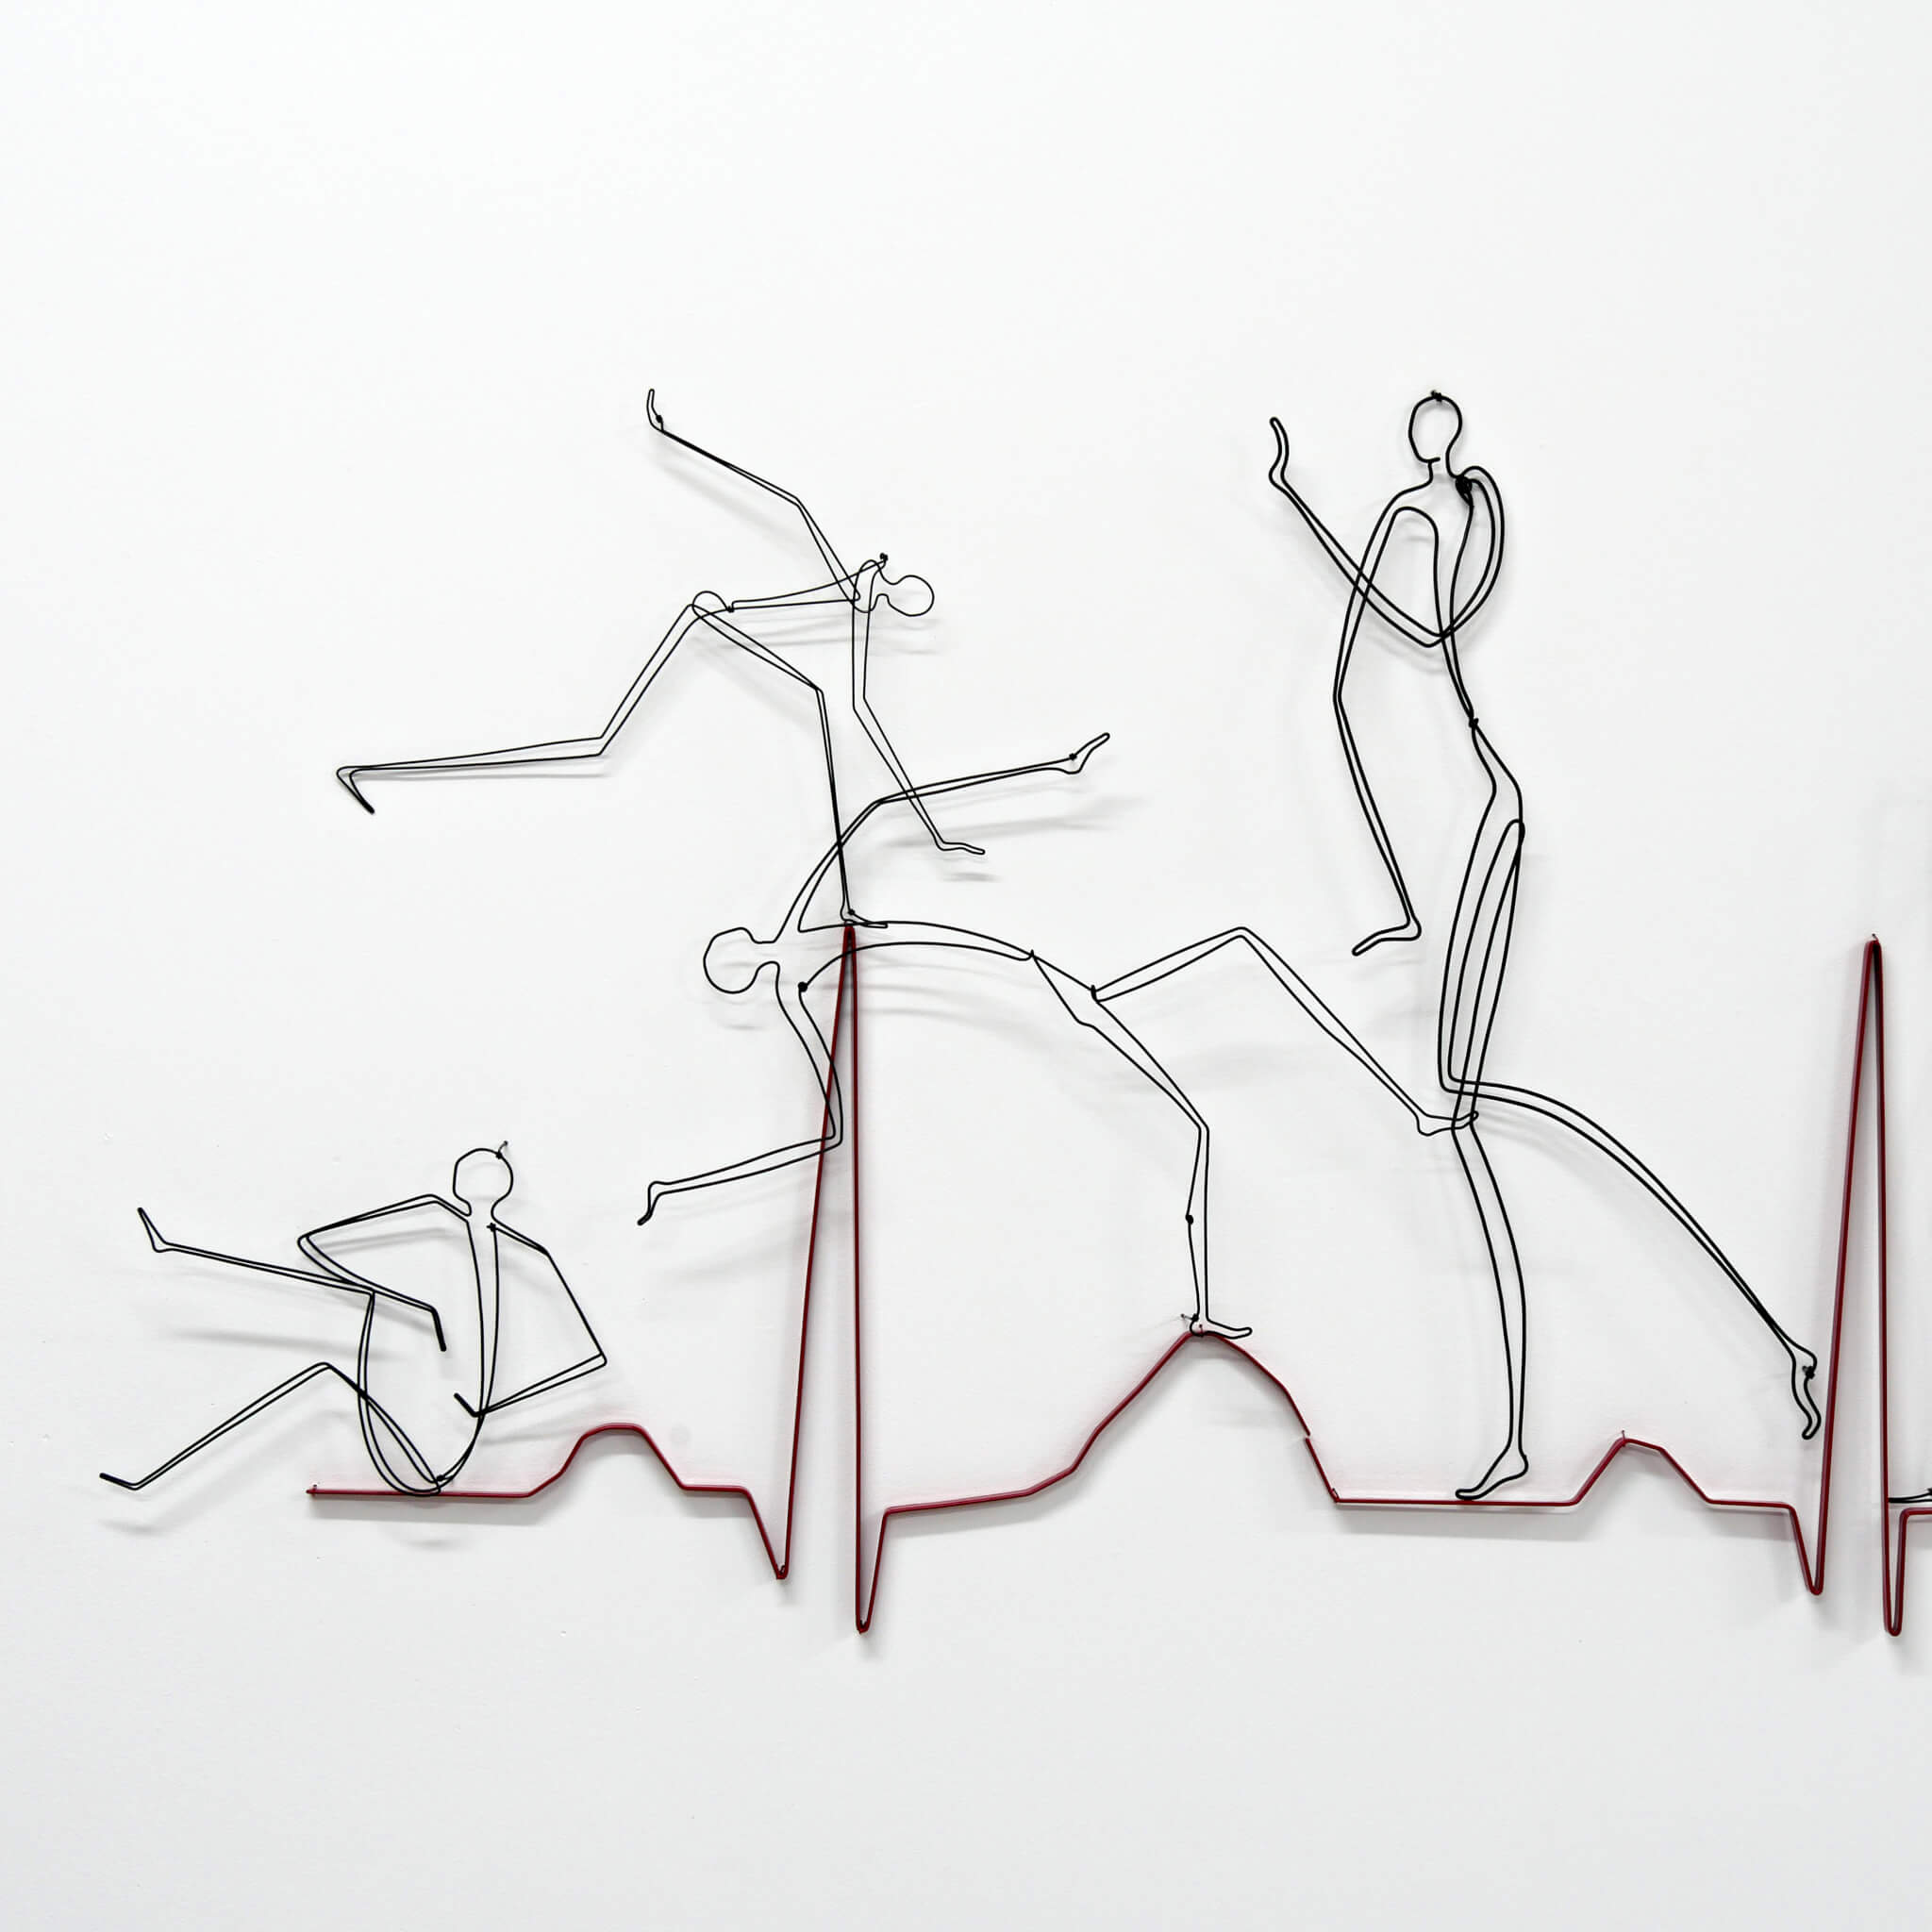 Pamela Merory Dam sculpture, "Heart, Attack." closeup 1